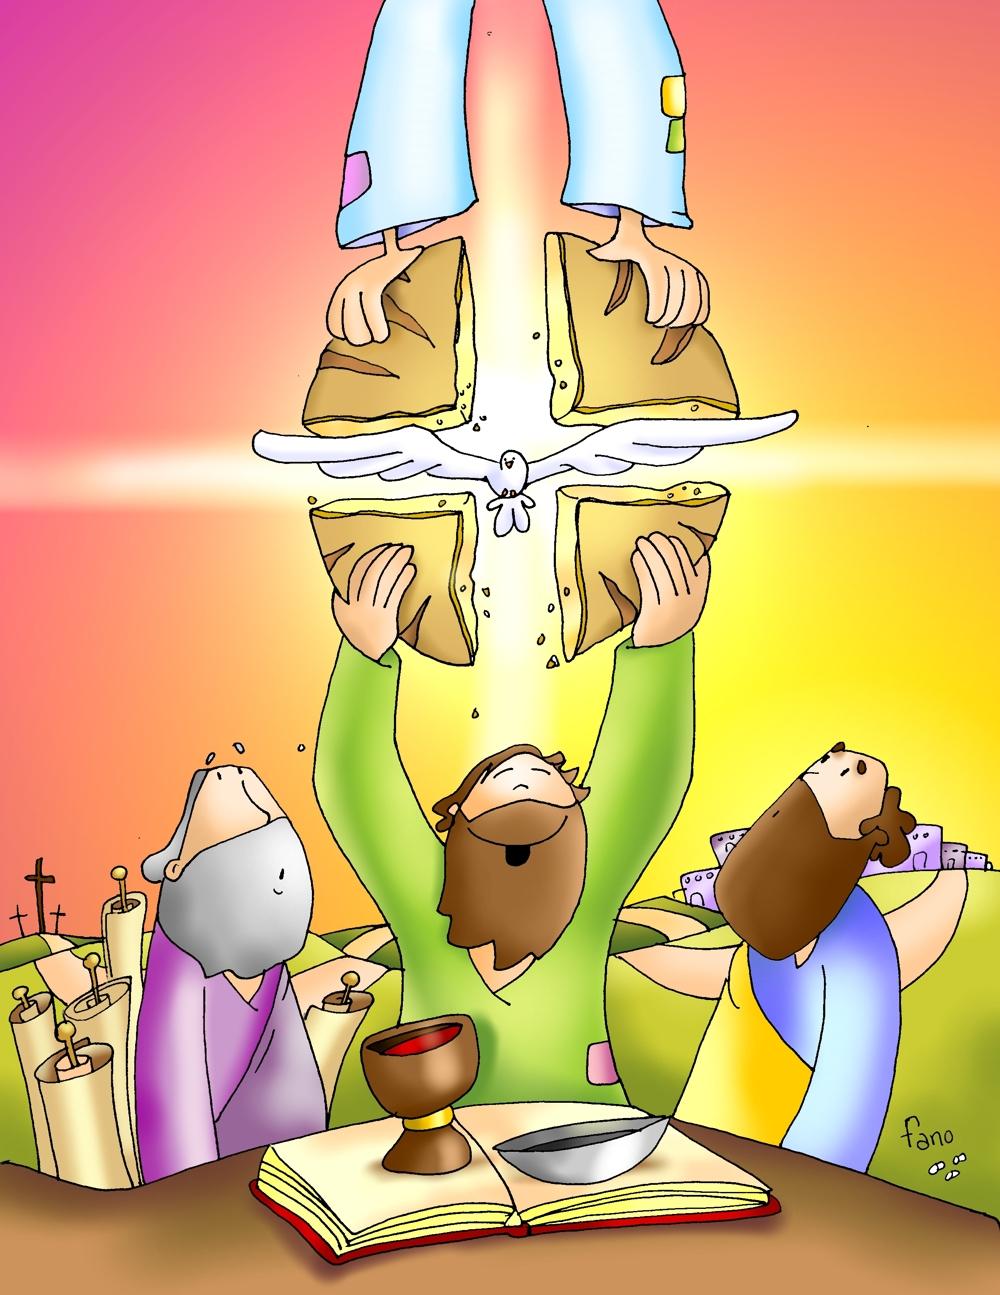 Evangelio Dominical: 07 de mayo de 2011 (Tercer domingo de Pascua)